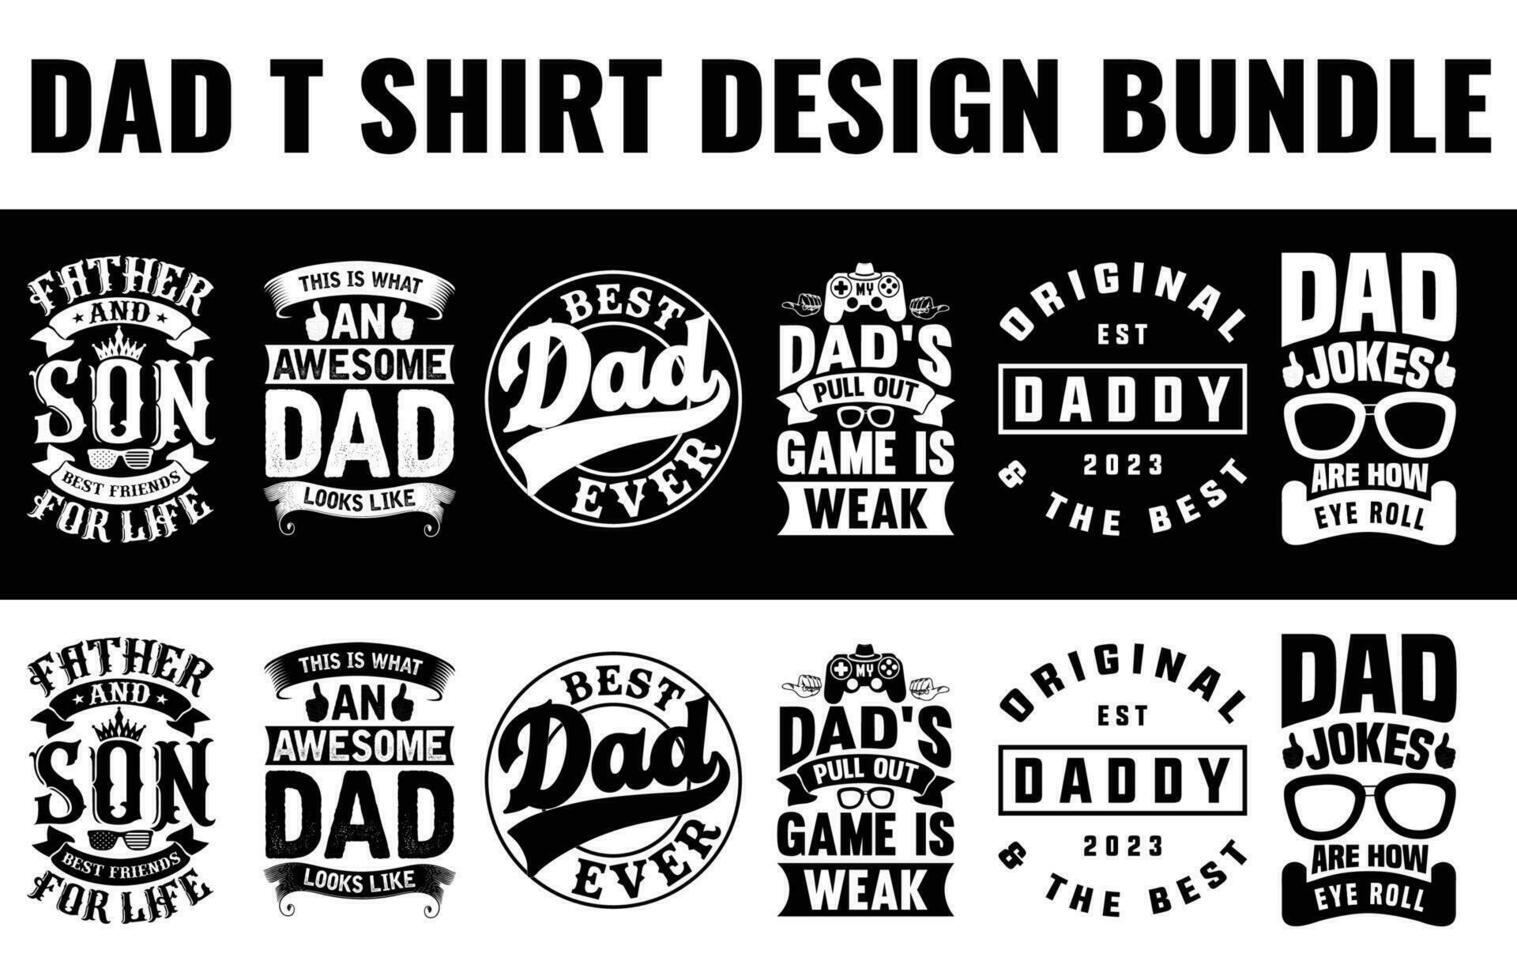 pa, papa, vader dag t overhemd ontwerp bundel vrij dwonload vector